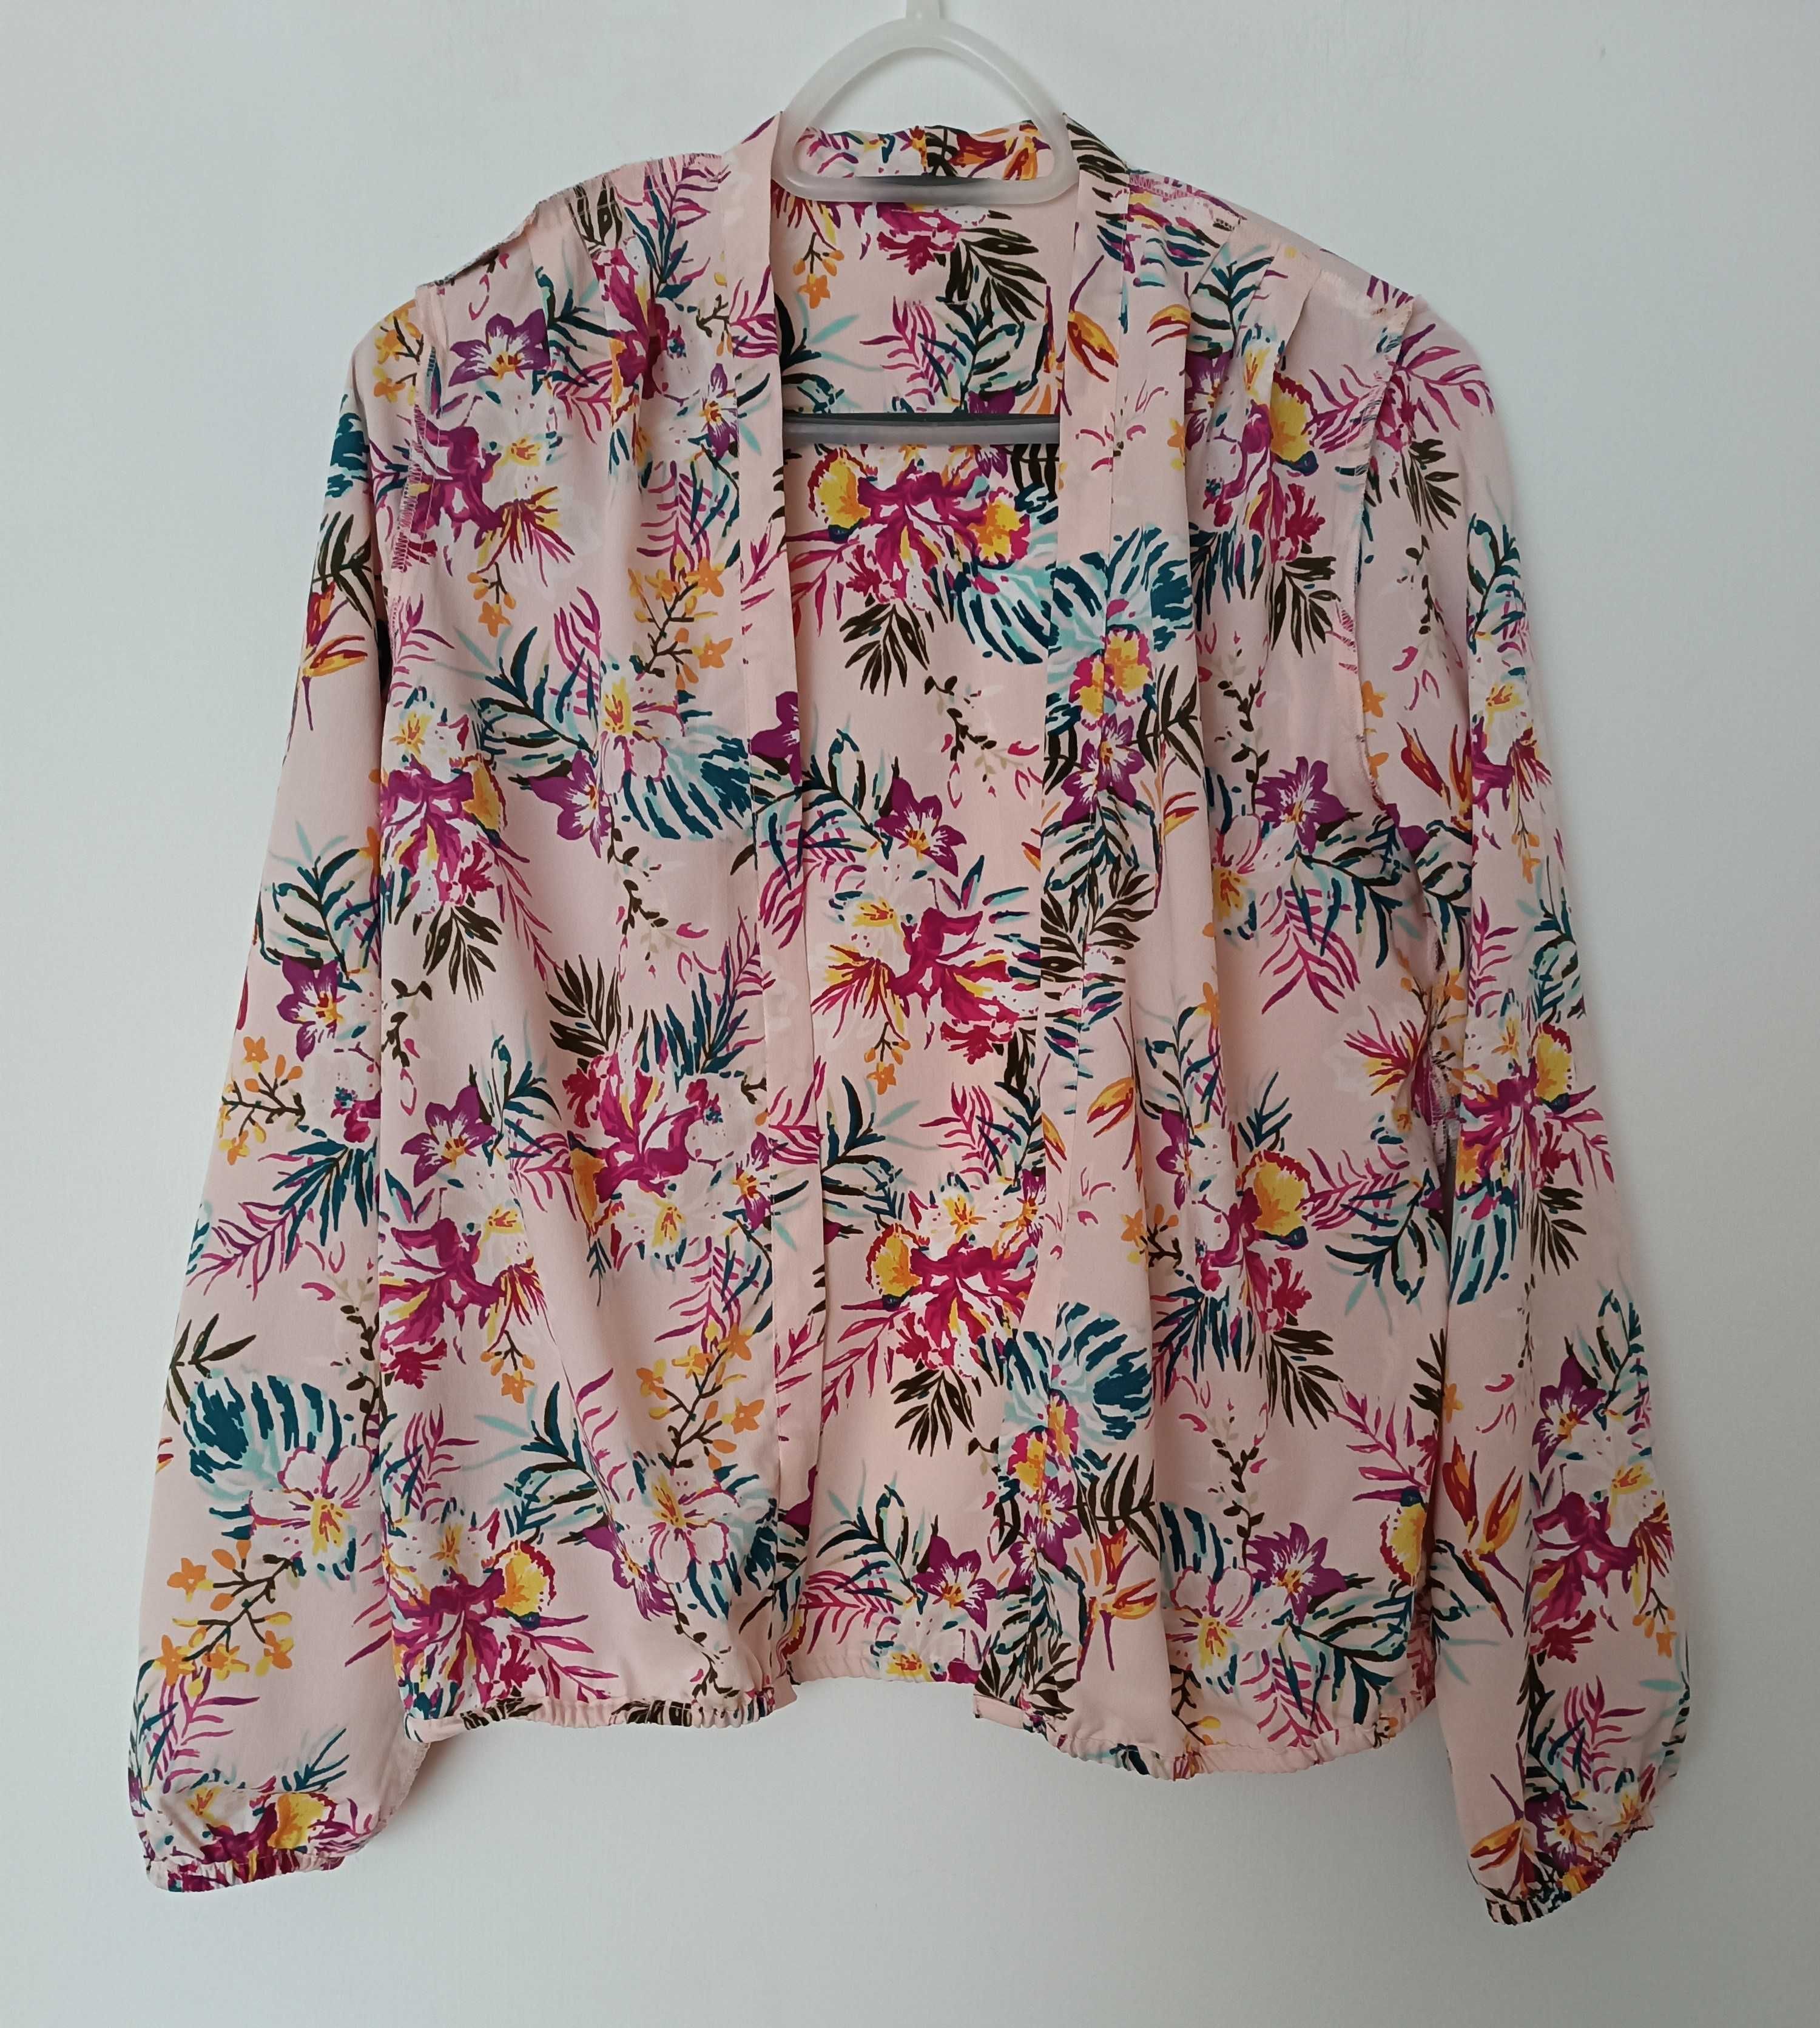 Narzutka/ bluzka koszulowa różowa w kwiaty rozmiar S